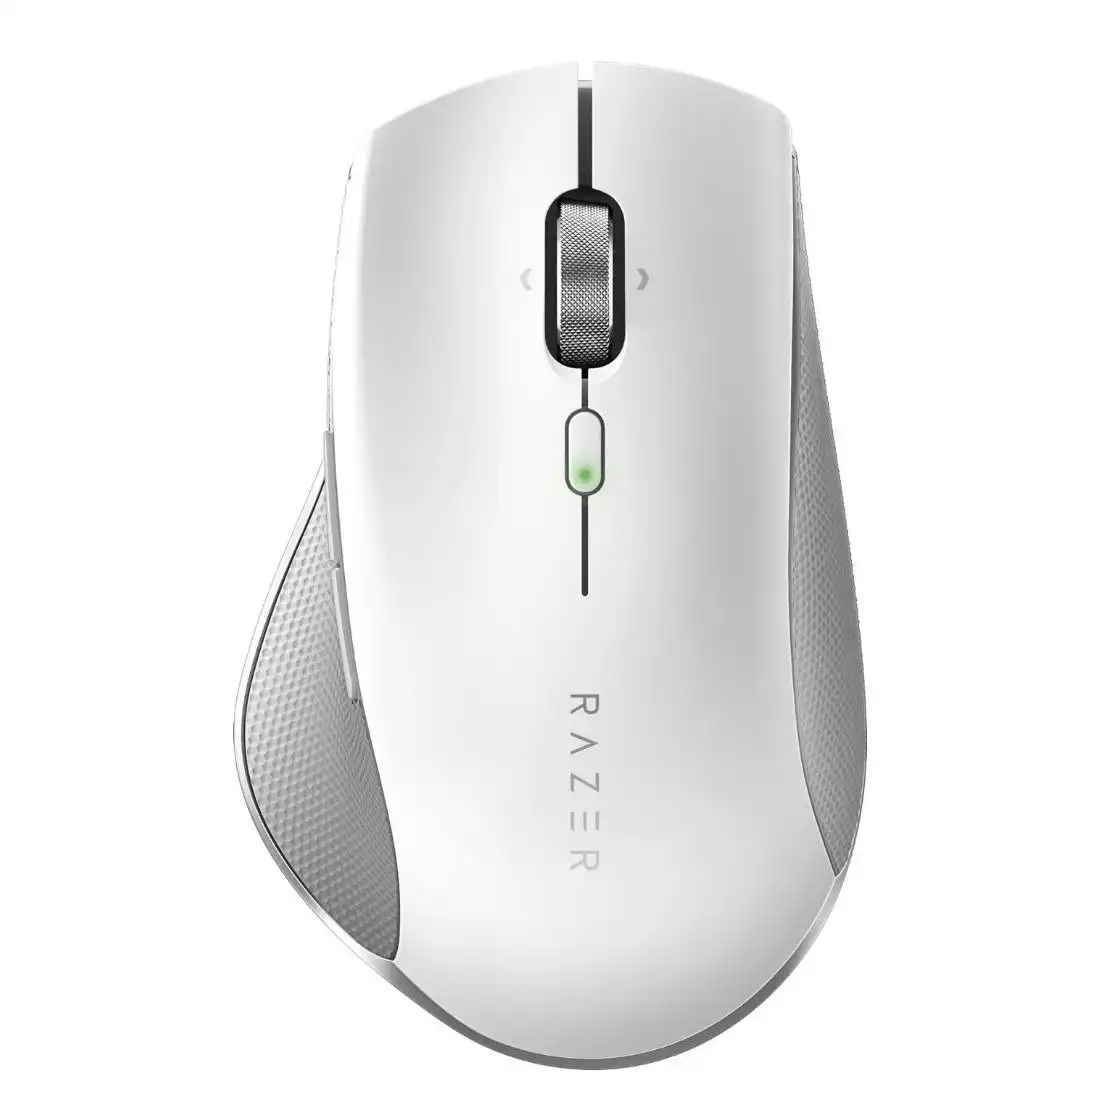 Razer Pro Click High Precision Ergonomic Wireless Mouse - White